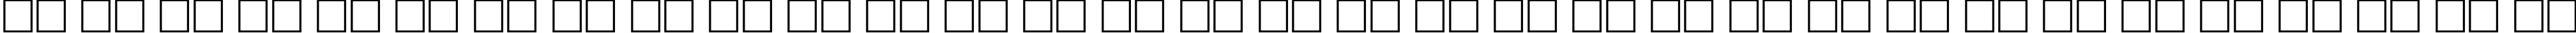 Пример написания русского алфавита шрифтом Cotlin